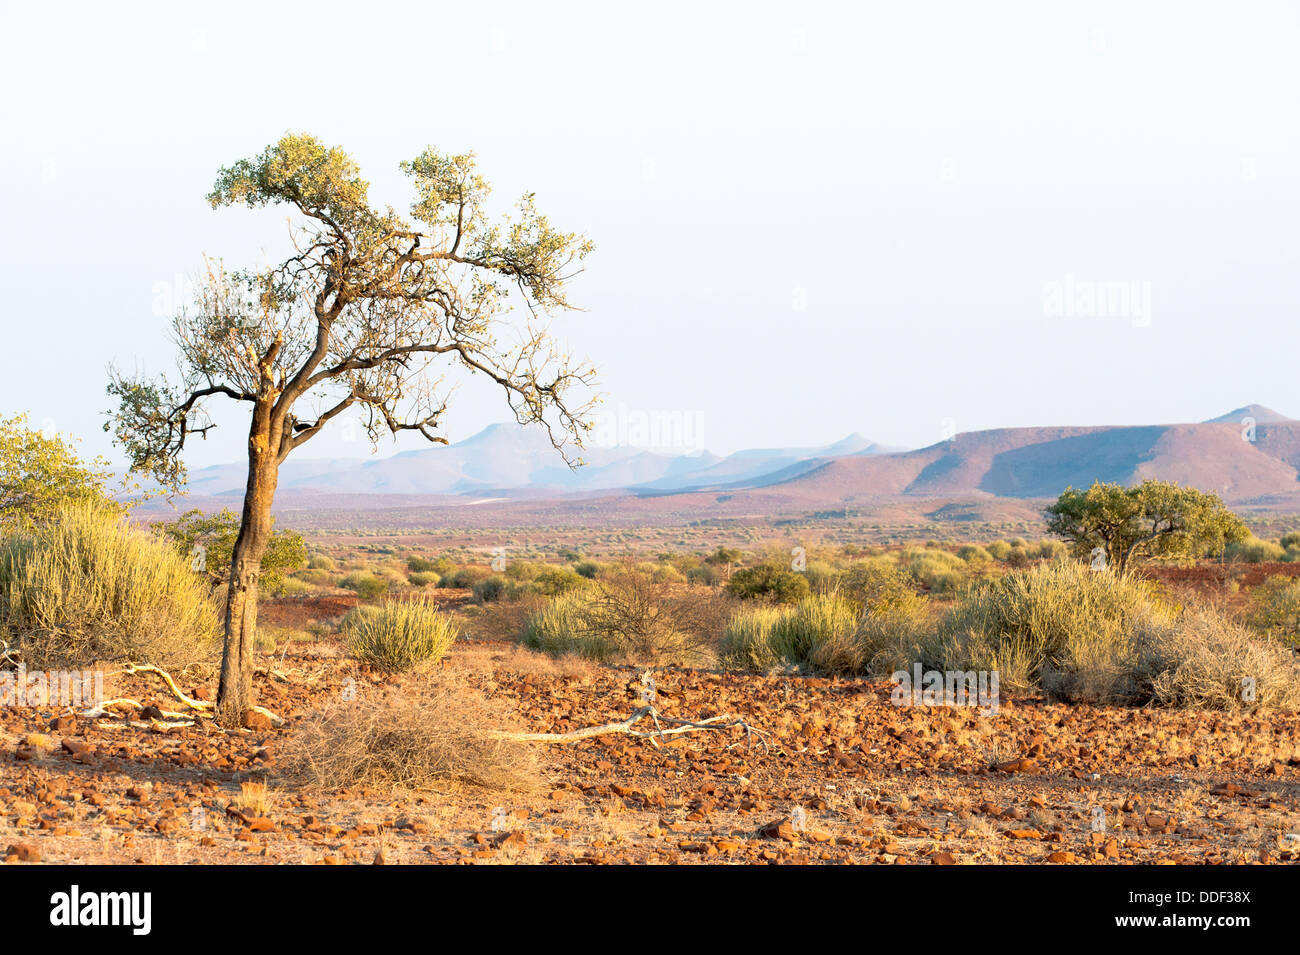 A single tree standing in a dry, open landscape in Kunene Region, Namibia Stock Photo